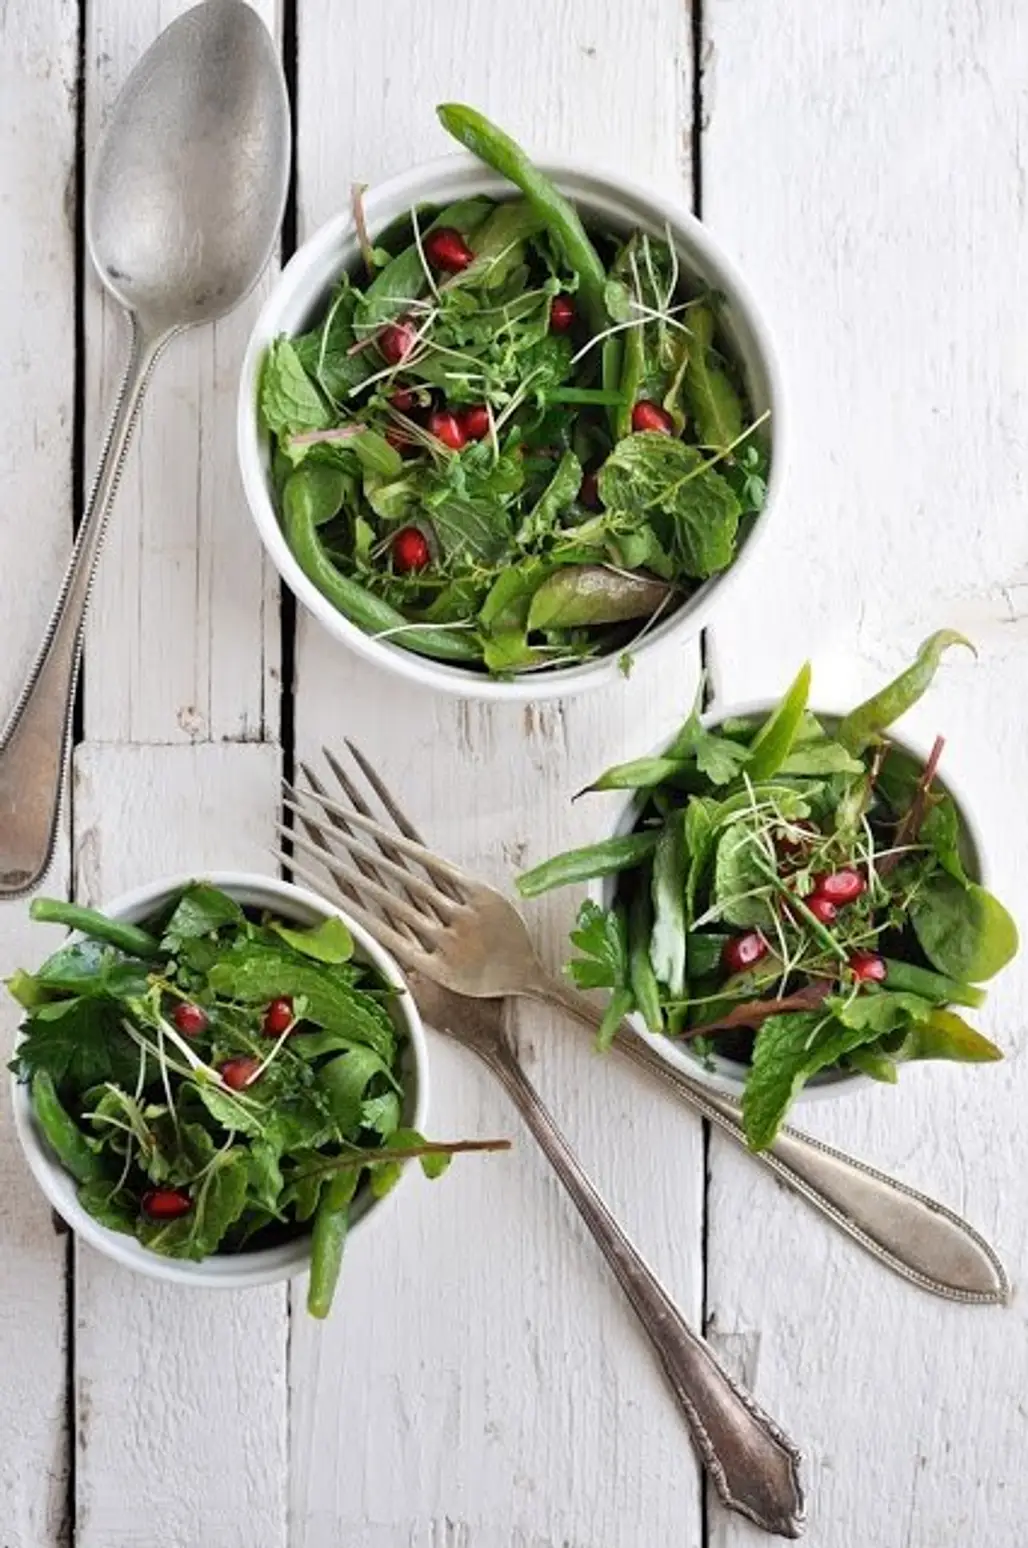 Eat Leafy Greens